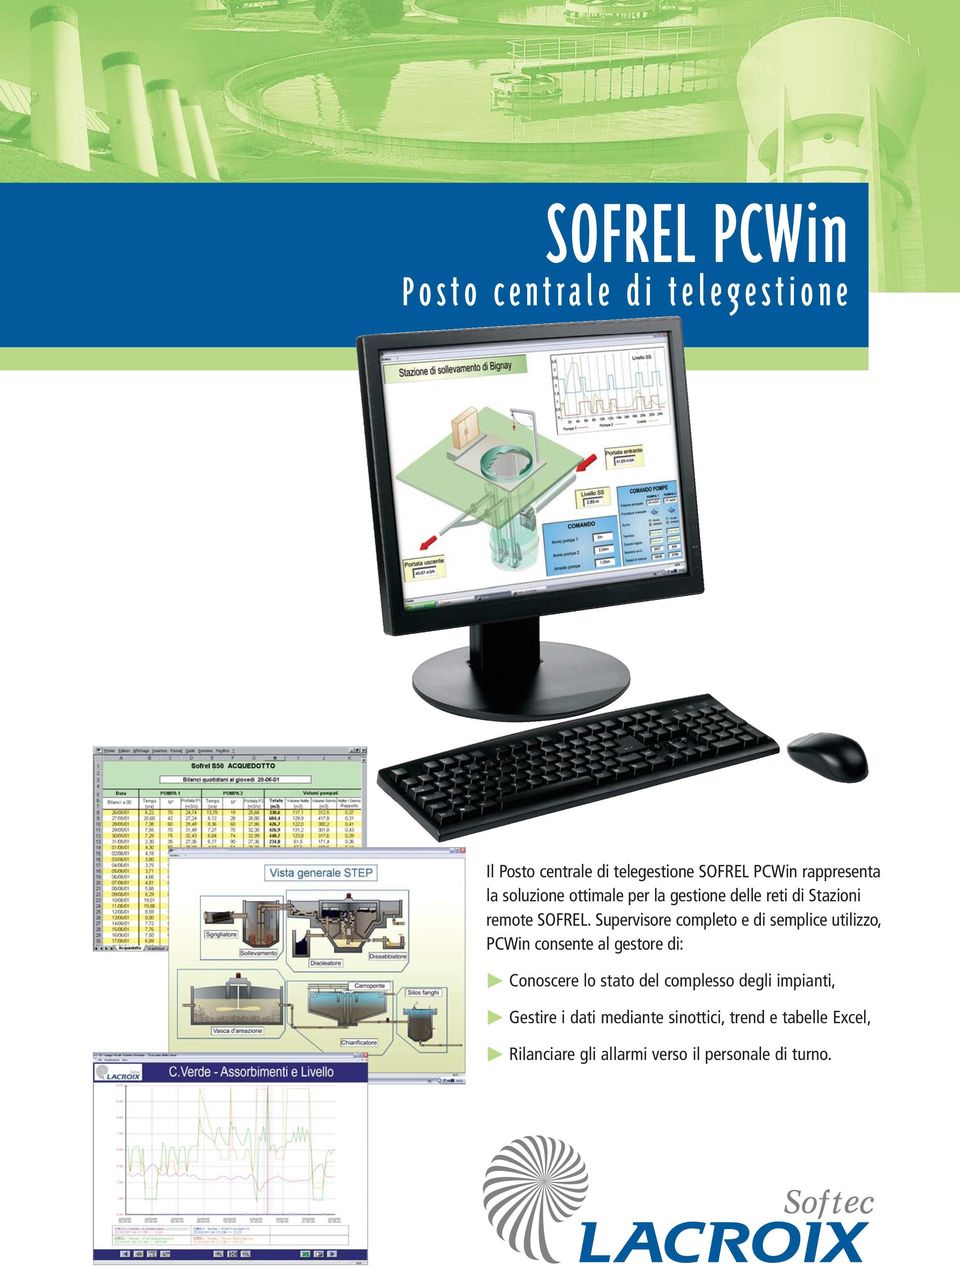 Supervisore completo e di semplice utilizzo, PCWin consente al gestore di: Conoscere lo stato del